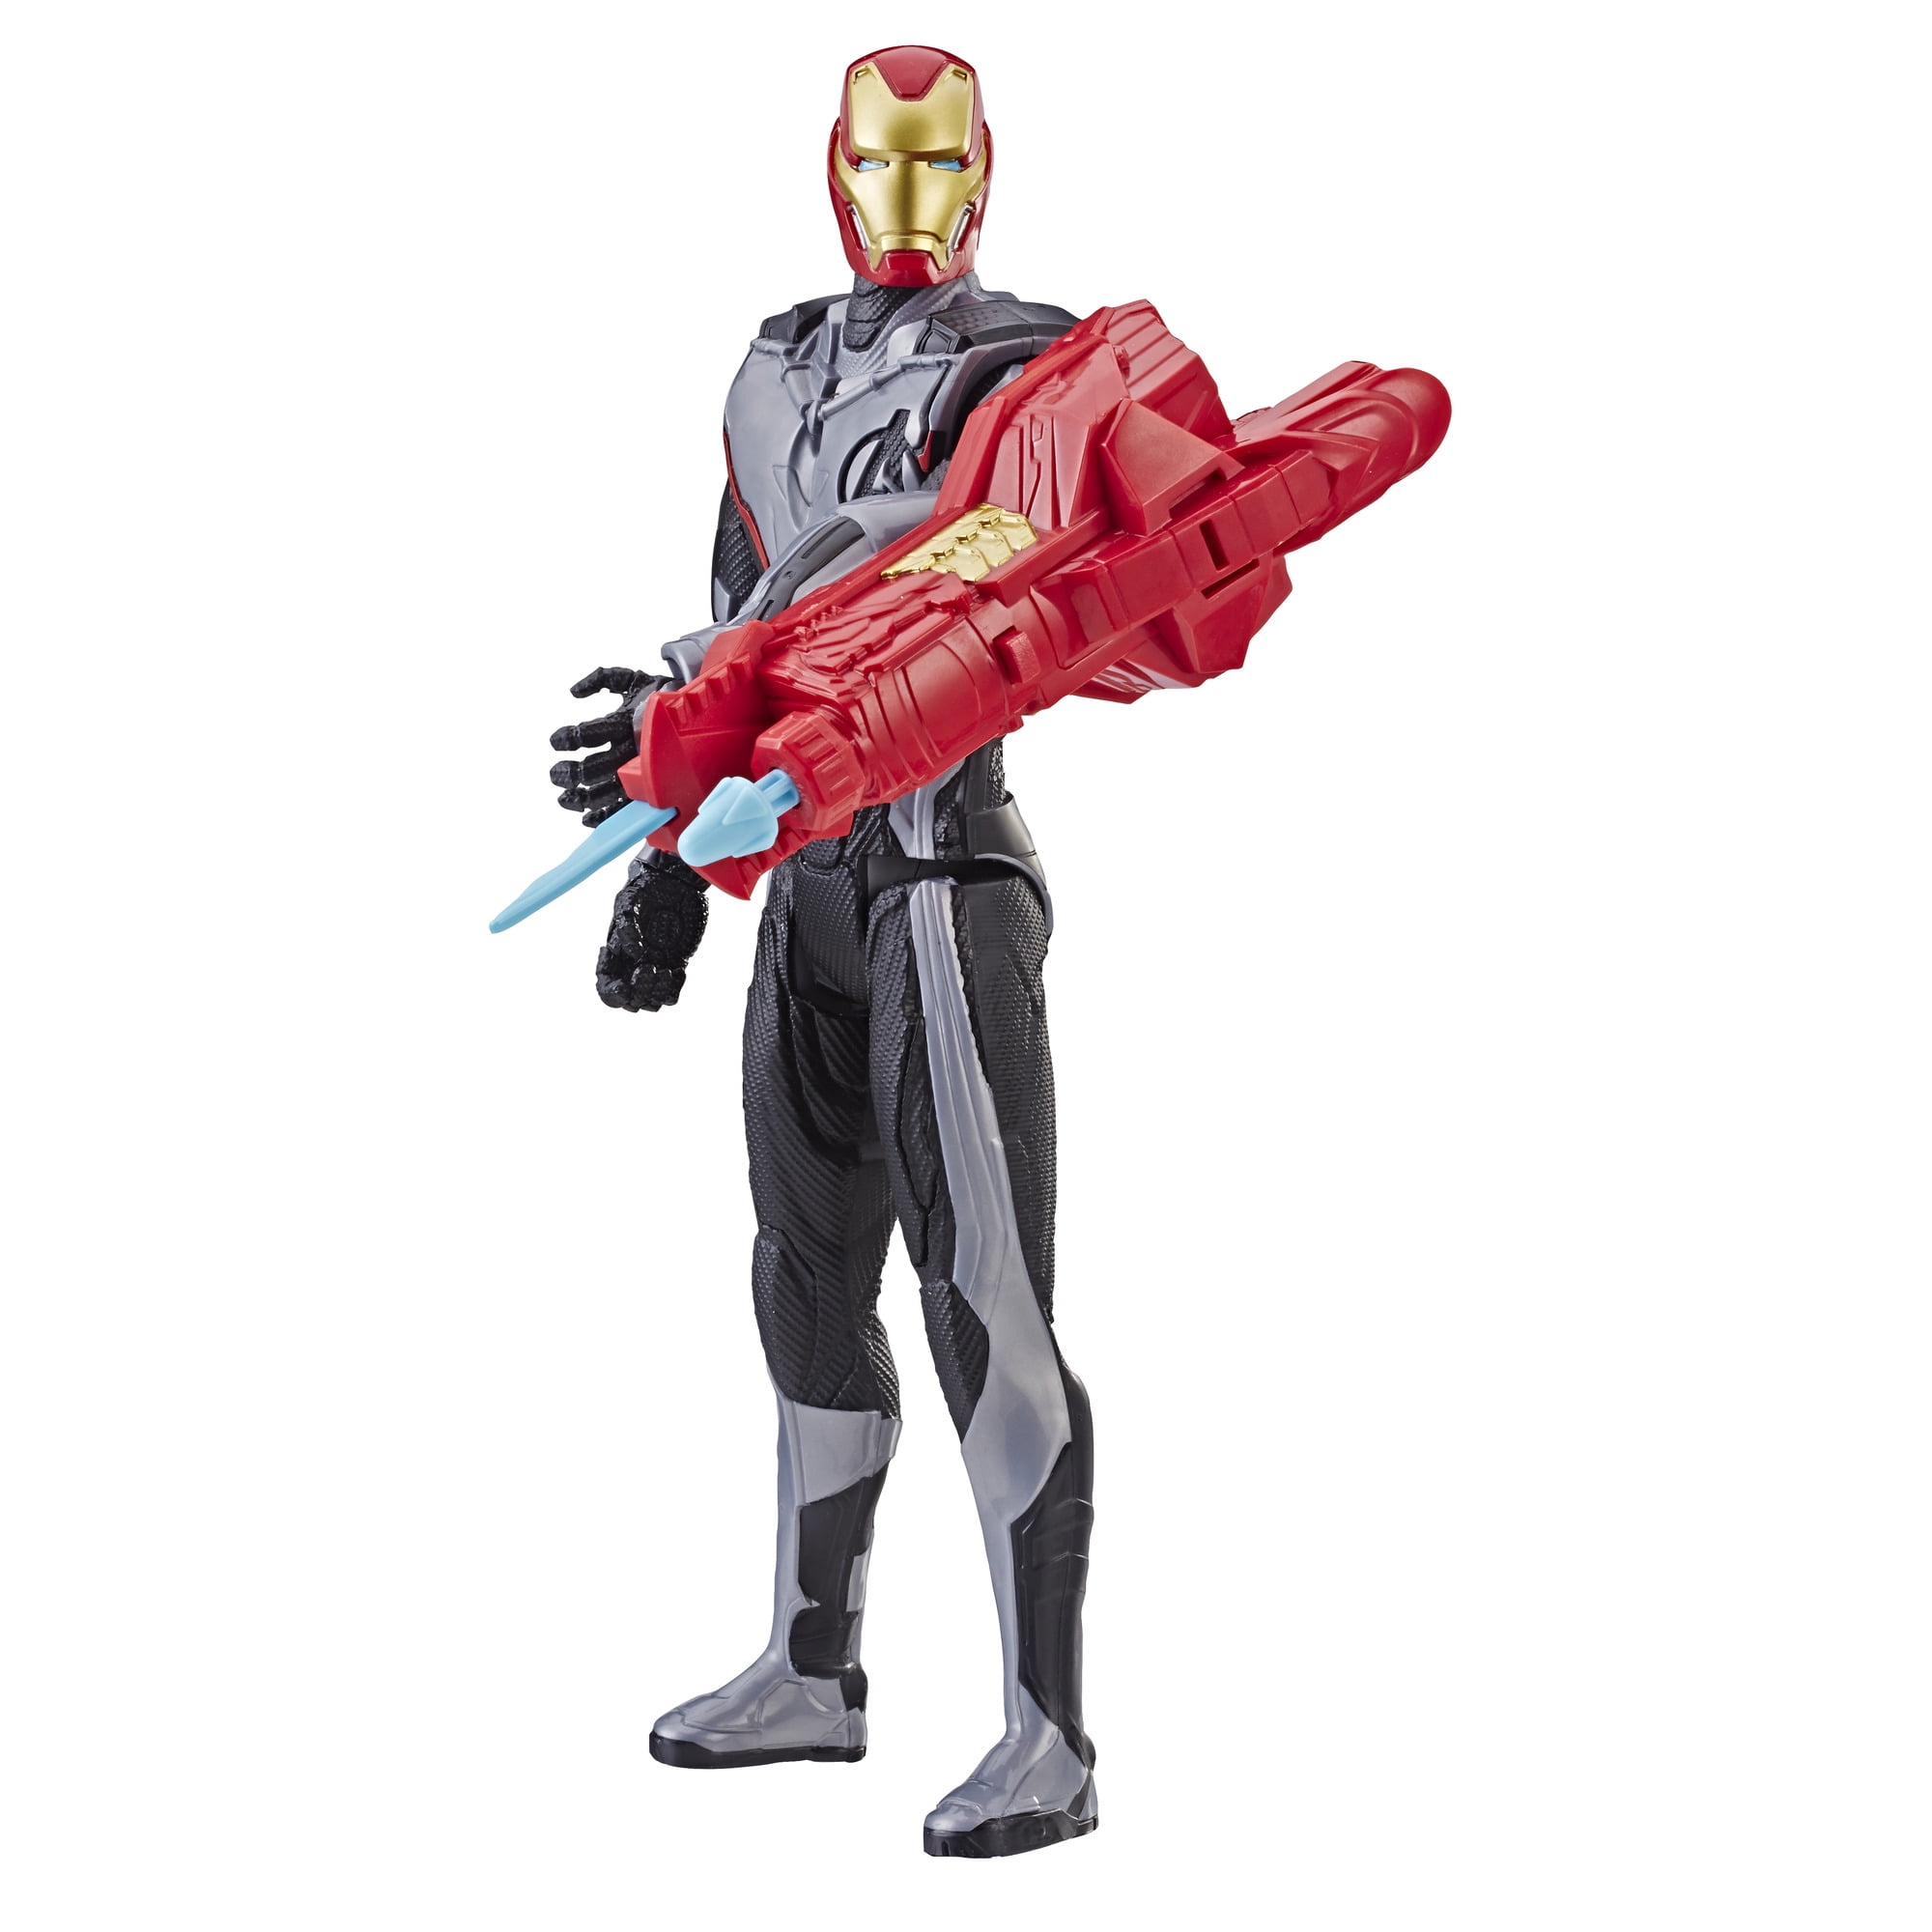 Marvel Avengers Endgame Ant-man Titan Hero Power FX Marvel's 12" Action Figure